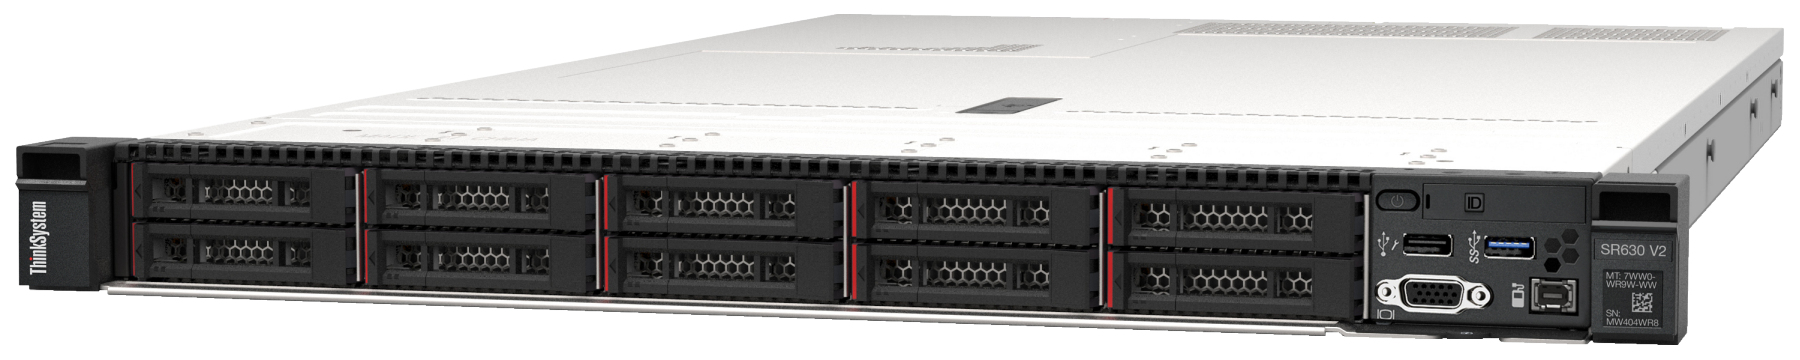 Сервер Lenovo ThinkSystem SR630 V2 (7Z71A05GEA). Фиксированная комплектация сервера